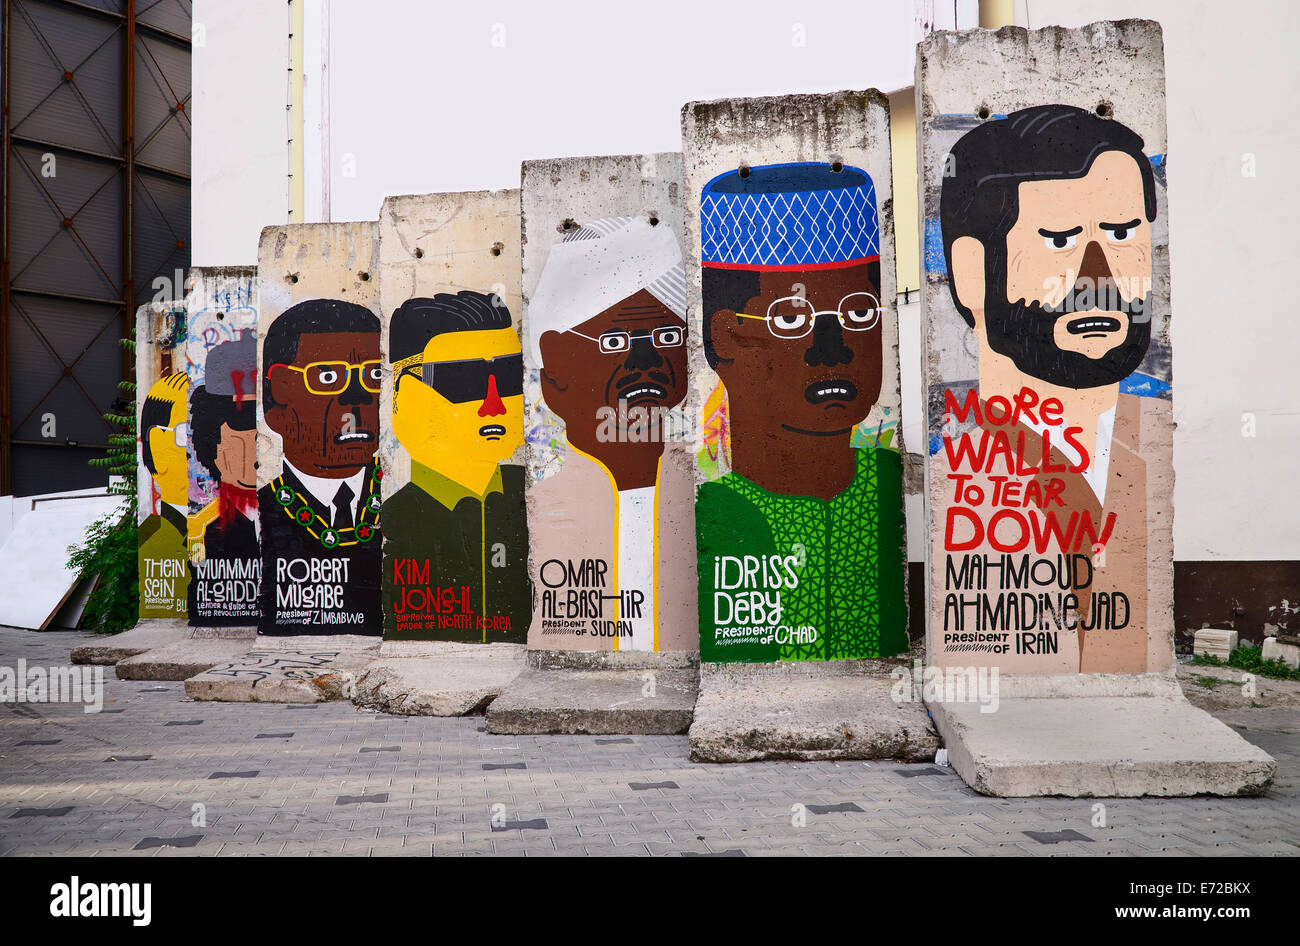 Deutschland, Berlin, Checkpoint Charlie Open Air-Ausstellung zeigt Abschnitte der Berliner Mauer ein politisches Statement über totalitäre Regime. Stockfoto